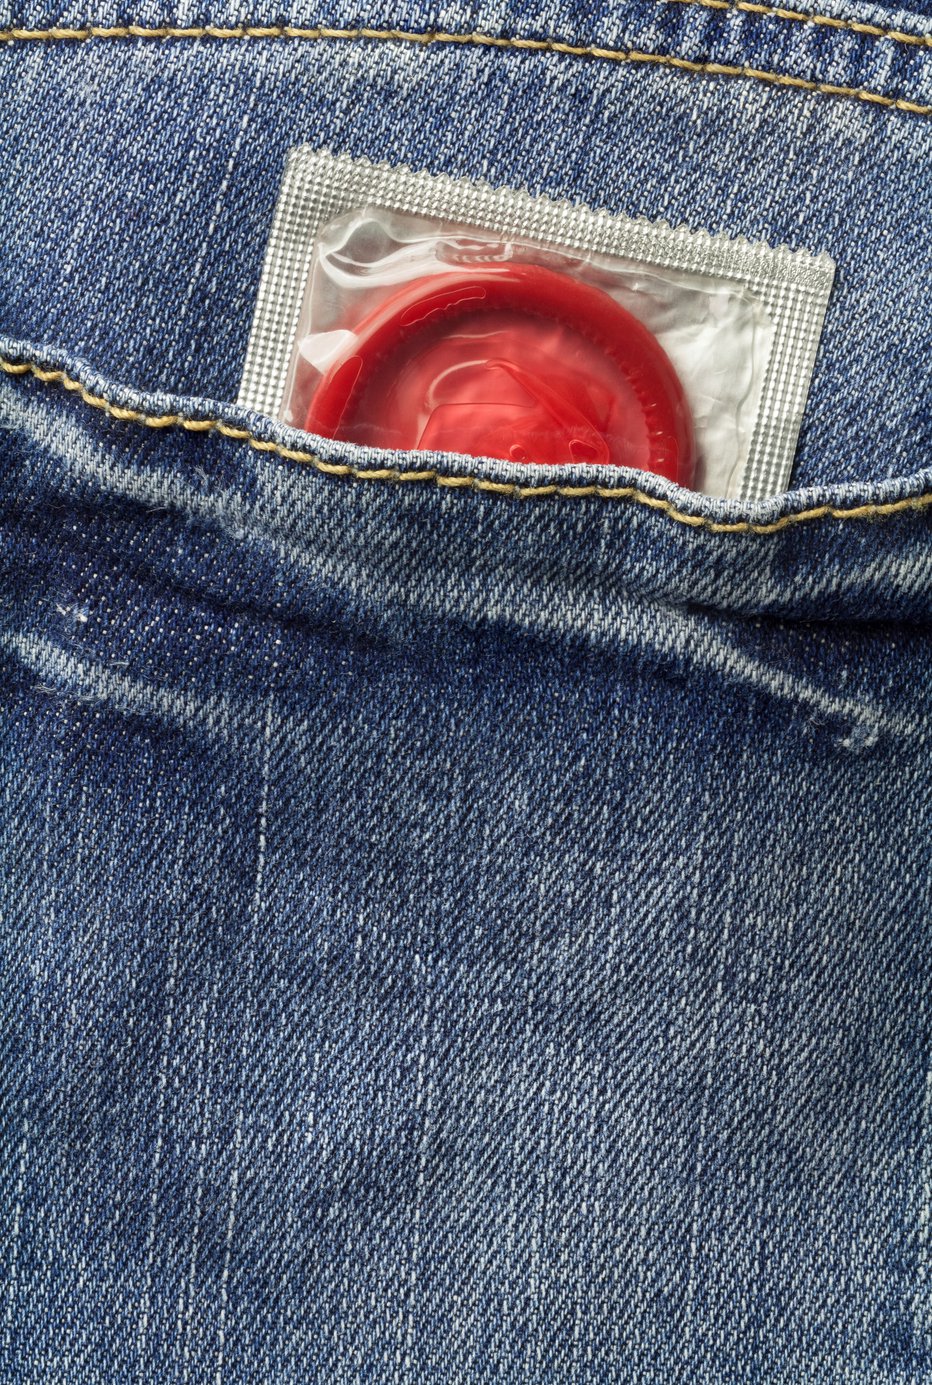 Fotografija: Malce me spominjajo na seks brez kondoma. FOTO: SHUTTERSTOCK PHOTO
